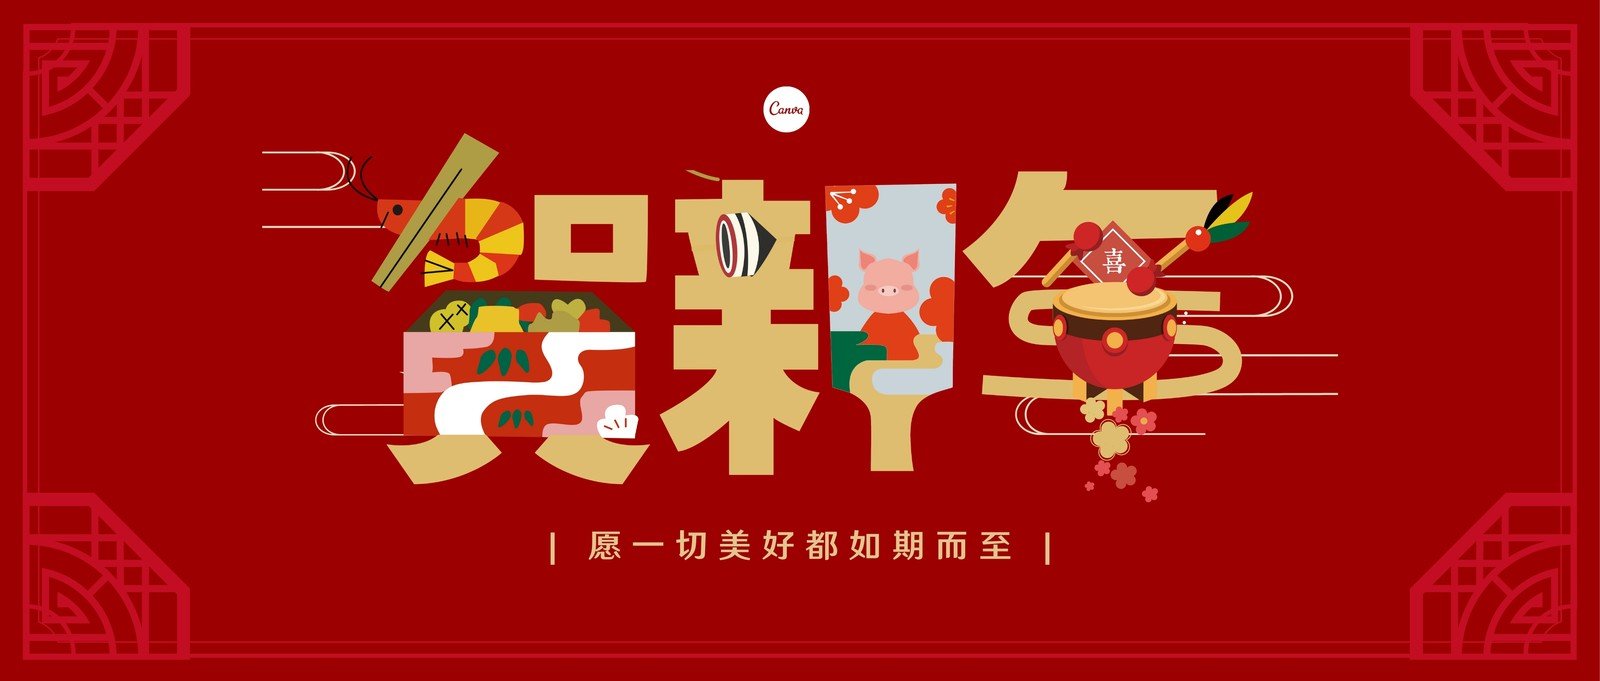 红金色贺新年卡通春节中文微信公众号封面